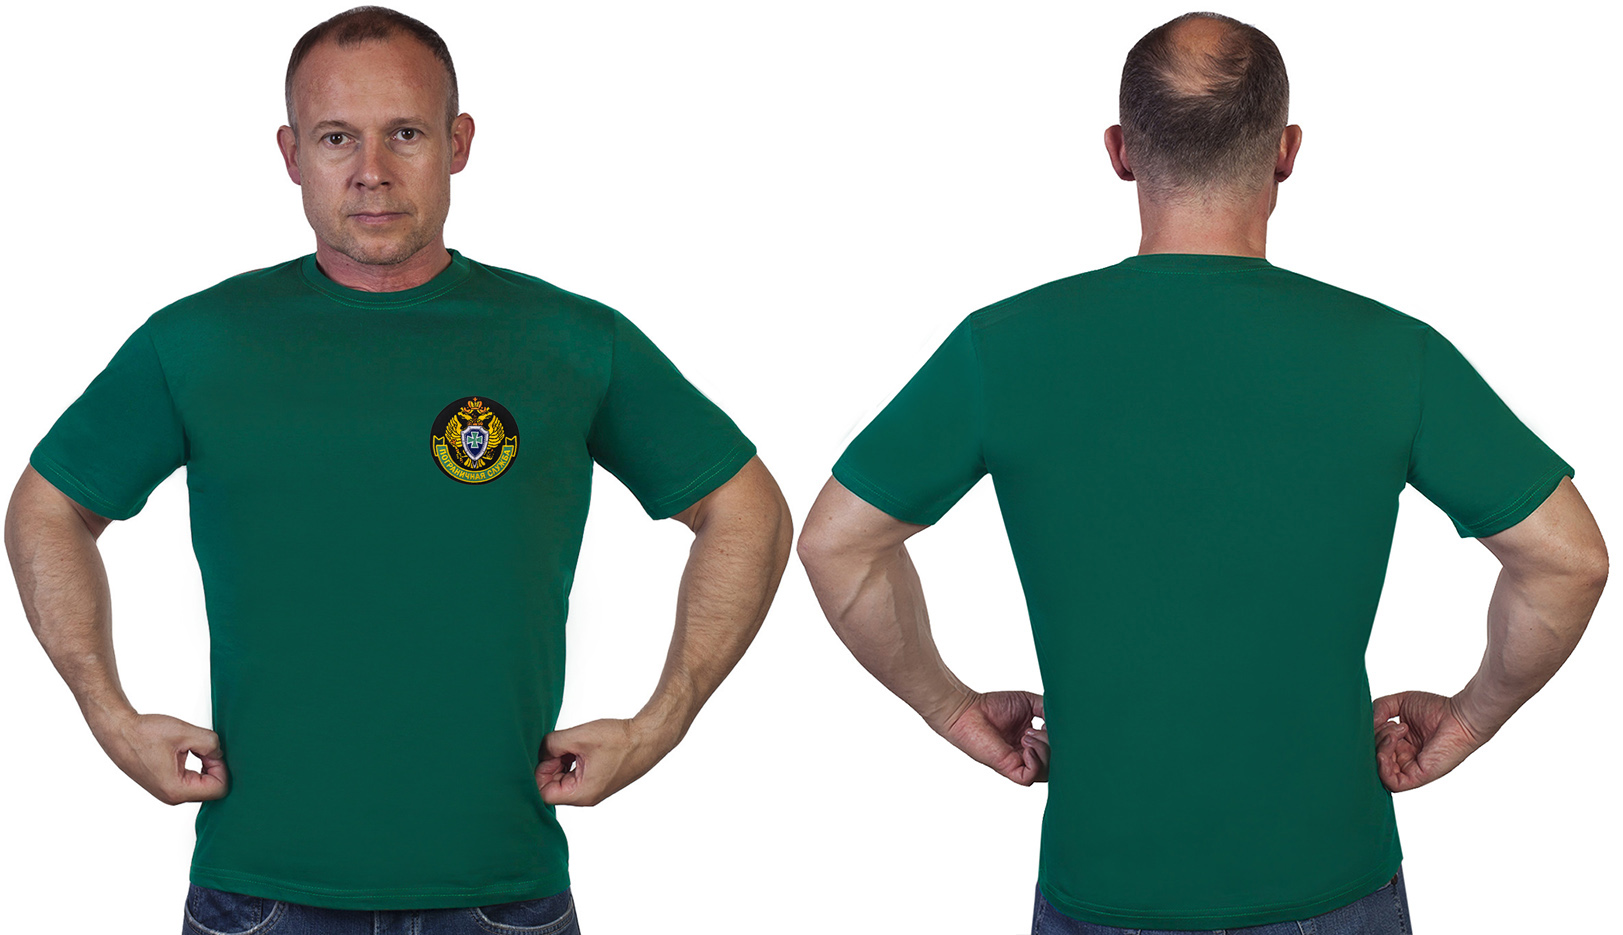 Зелёная футболка с эмблемой Пограничной службы - в розницу и оптом